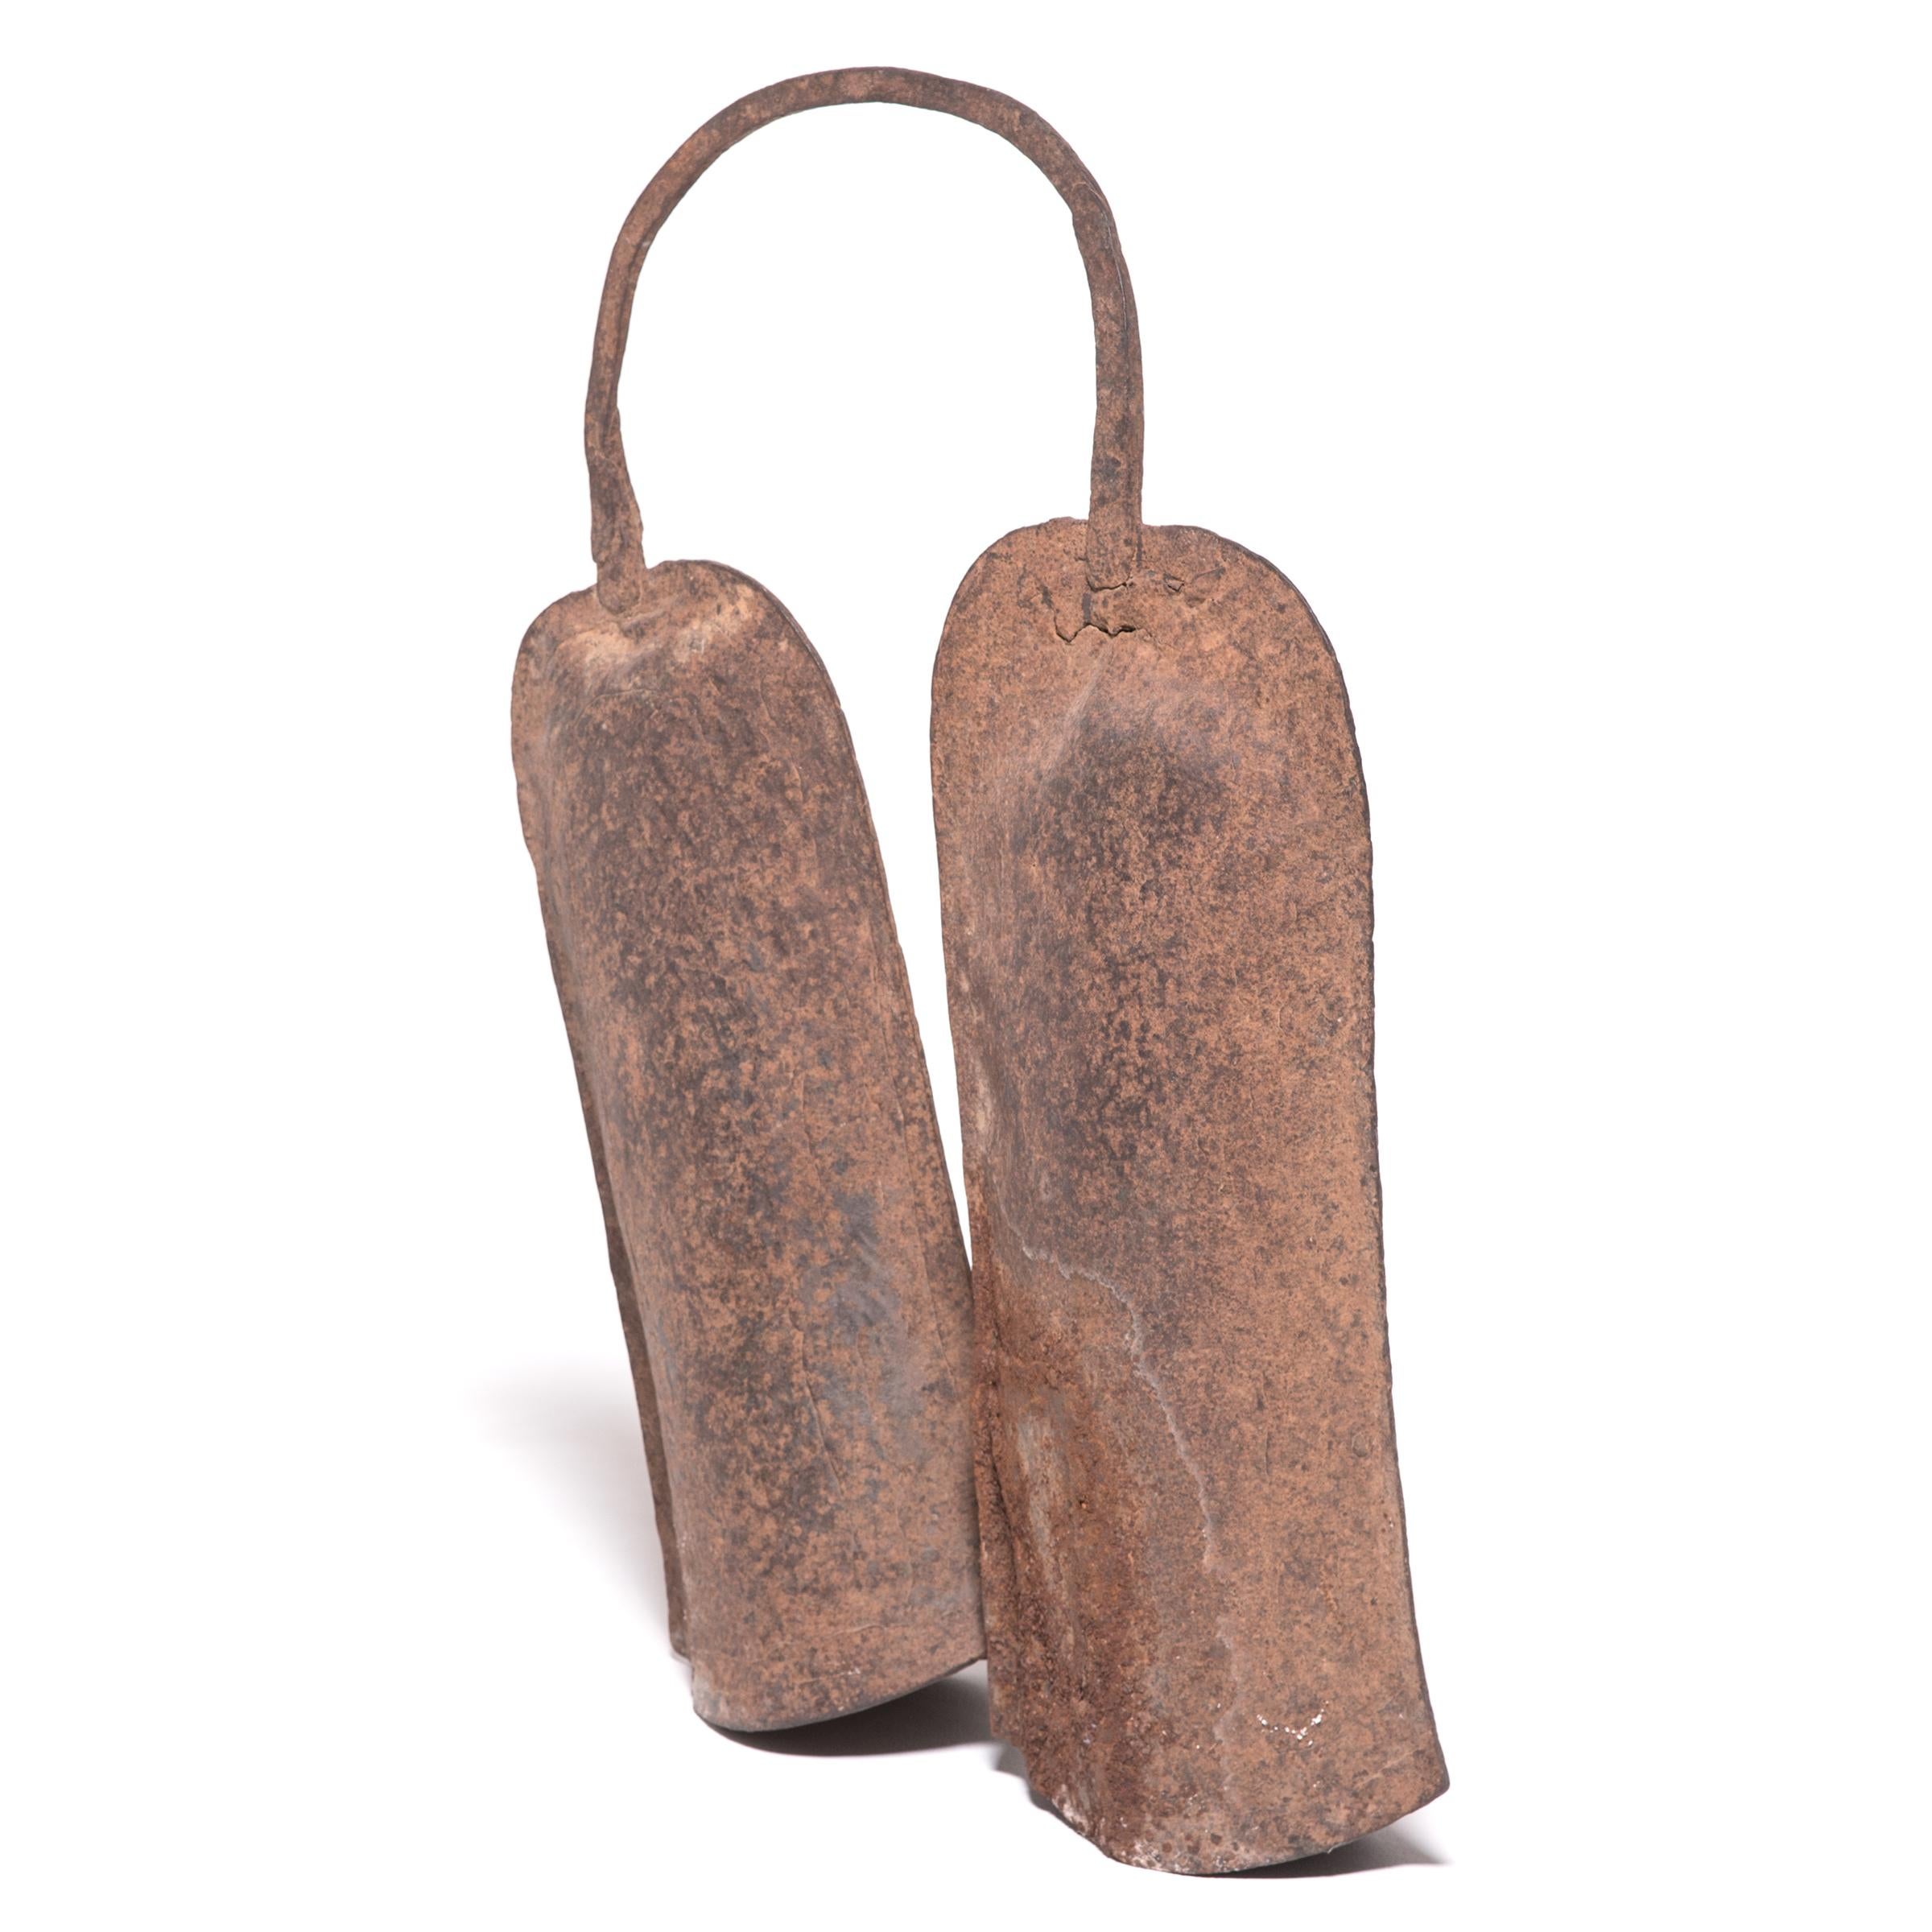 Wie viele Stücke traditioneller afrikanischer Metallarbeit diente auch diese Doppelglocke den Bamileke-Gemeinschaften in Kamerun zu verschiedenen Zwecken. Sie waren Statussymbole, Zeremonialinstrumente und Geldstücke, die bei seltenen und